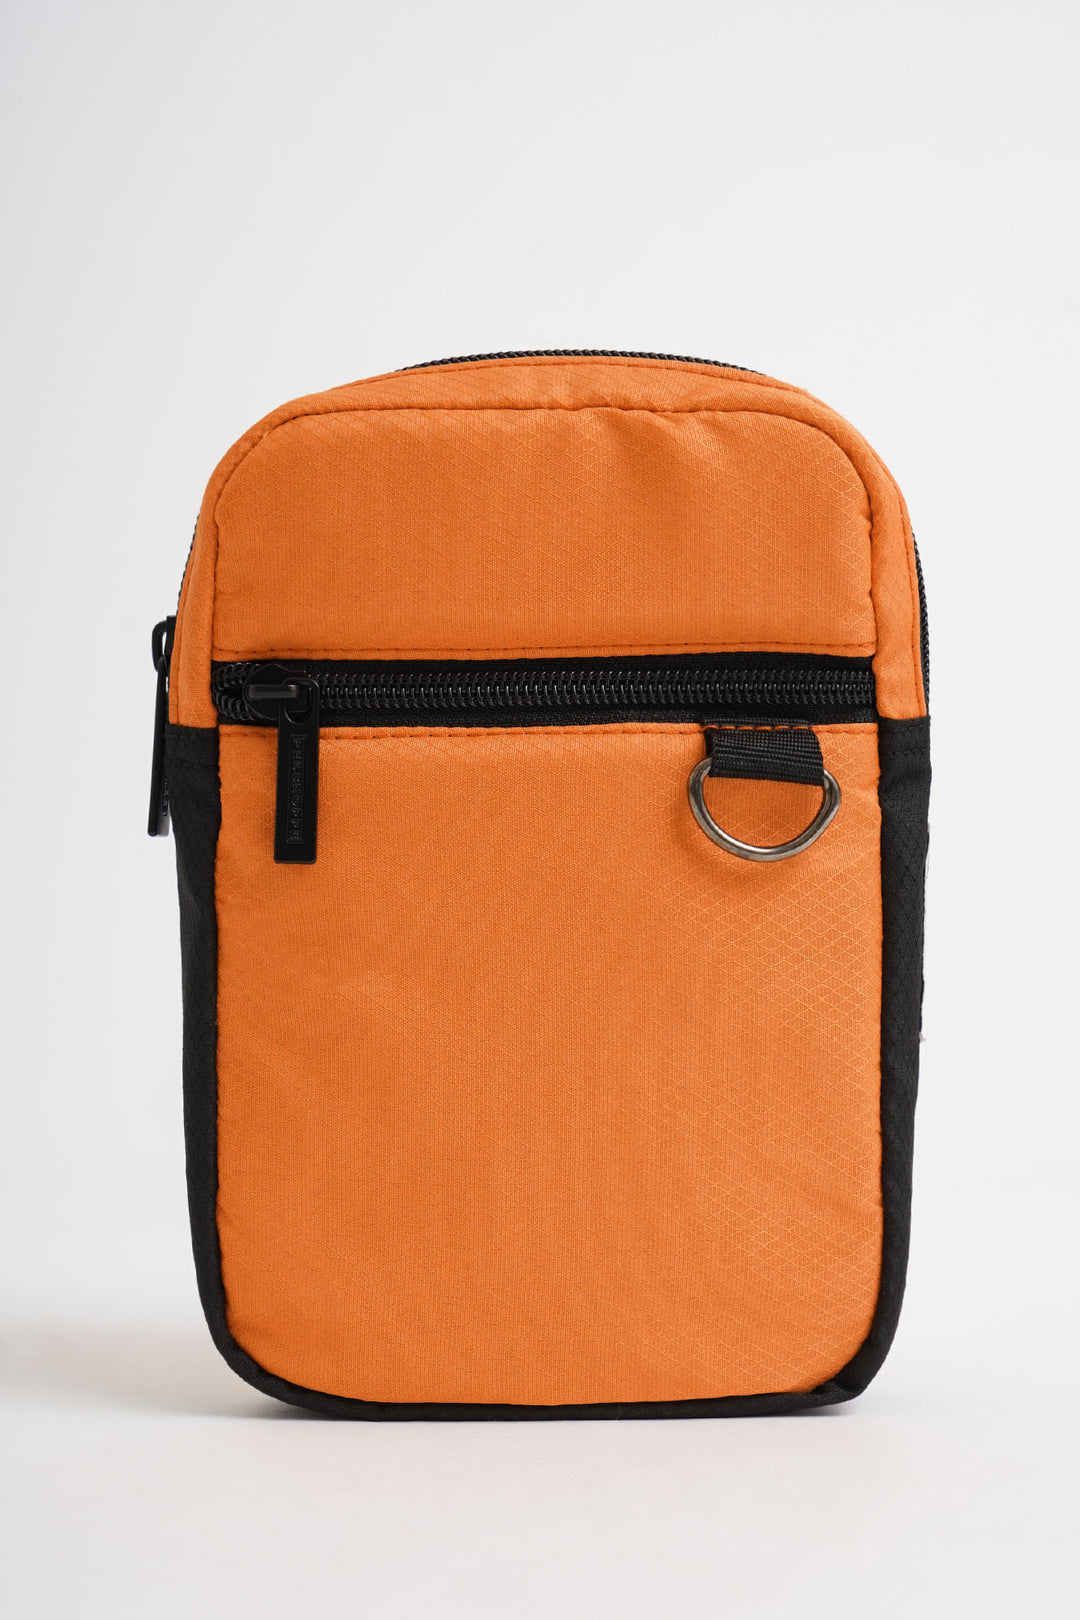 Atlanta Half Moon Shoulder Bag in Orange